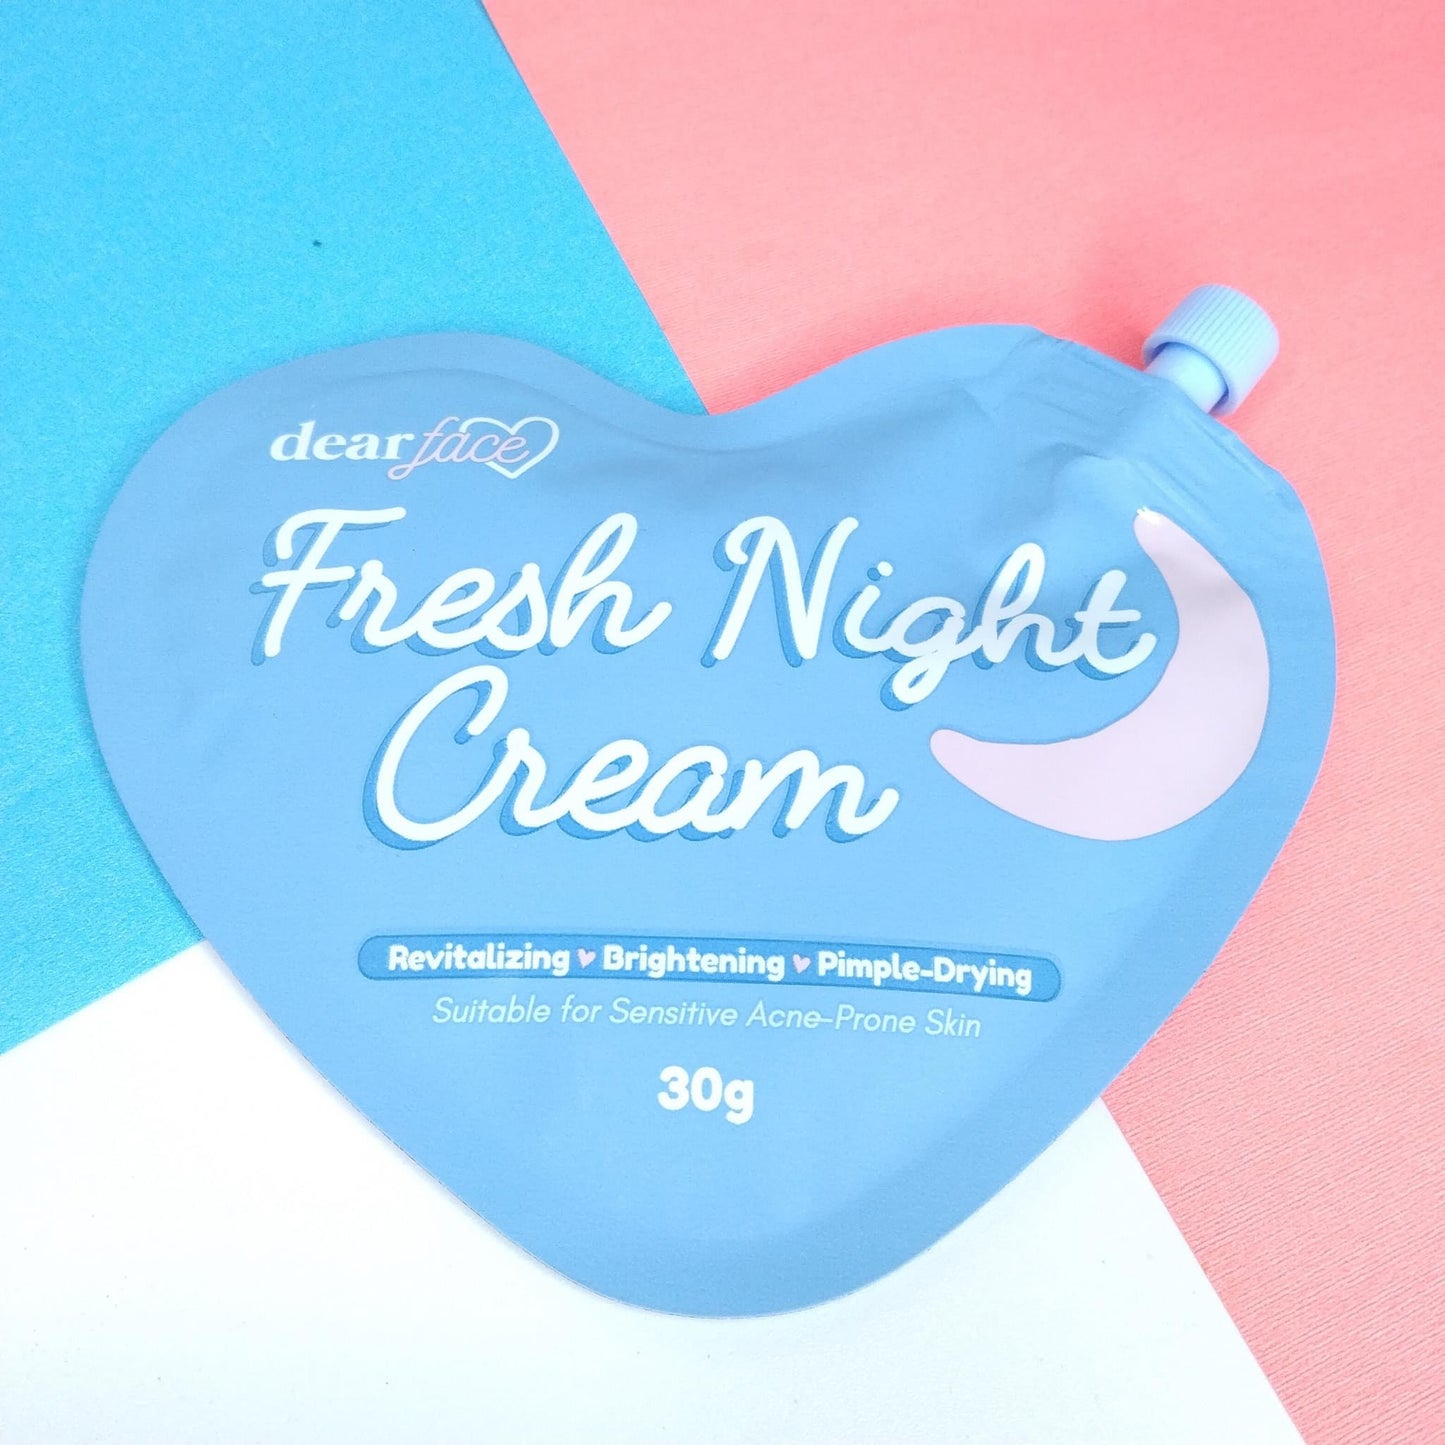 Dear Face Fresh Night Cream